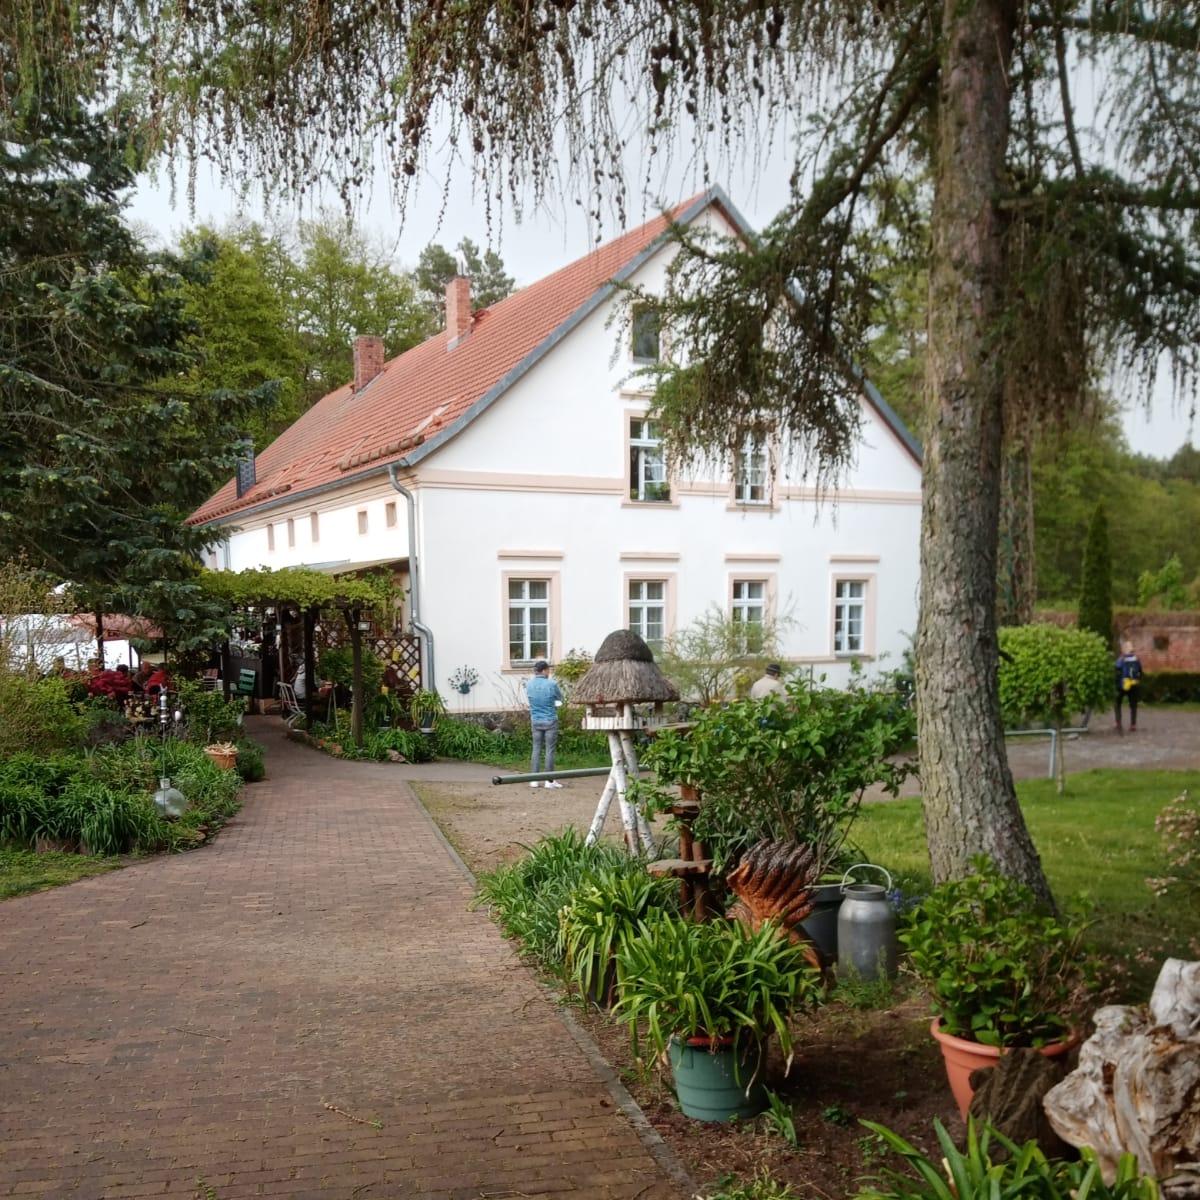 Restaurant "Ragower Mühle" in  Siehdichum